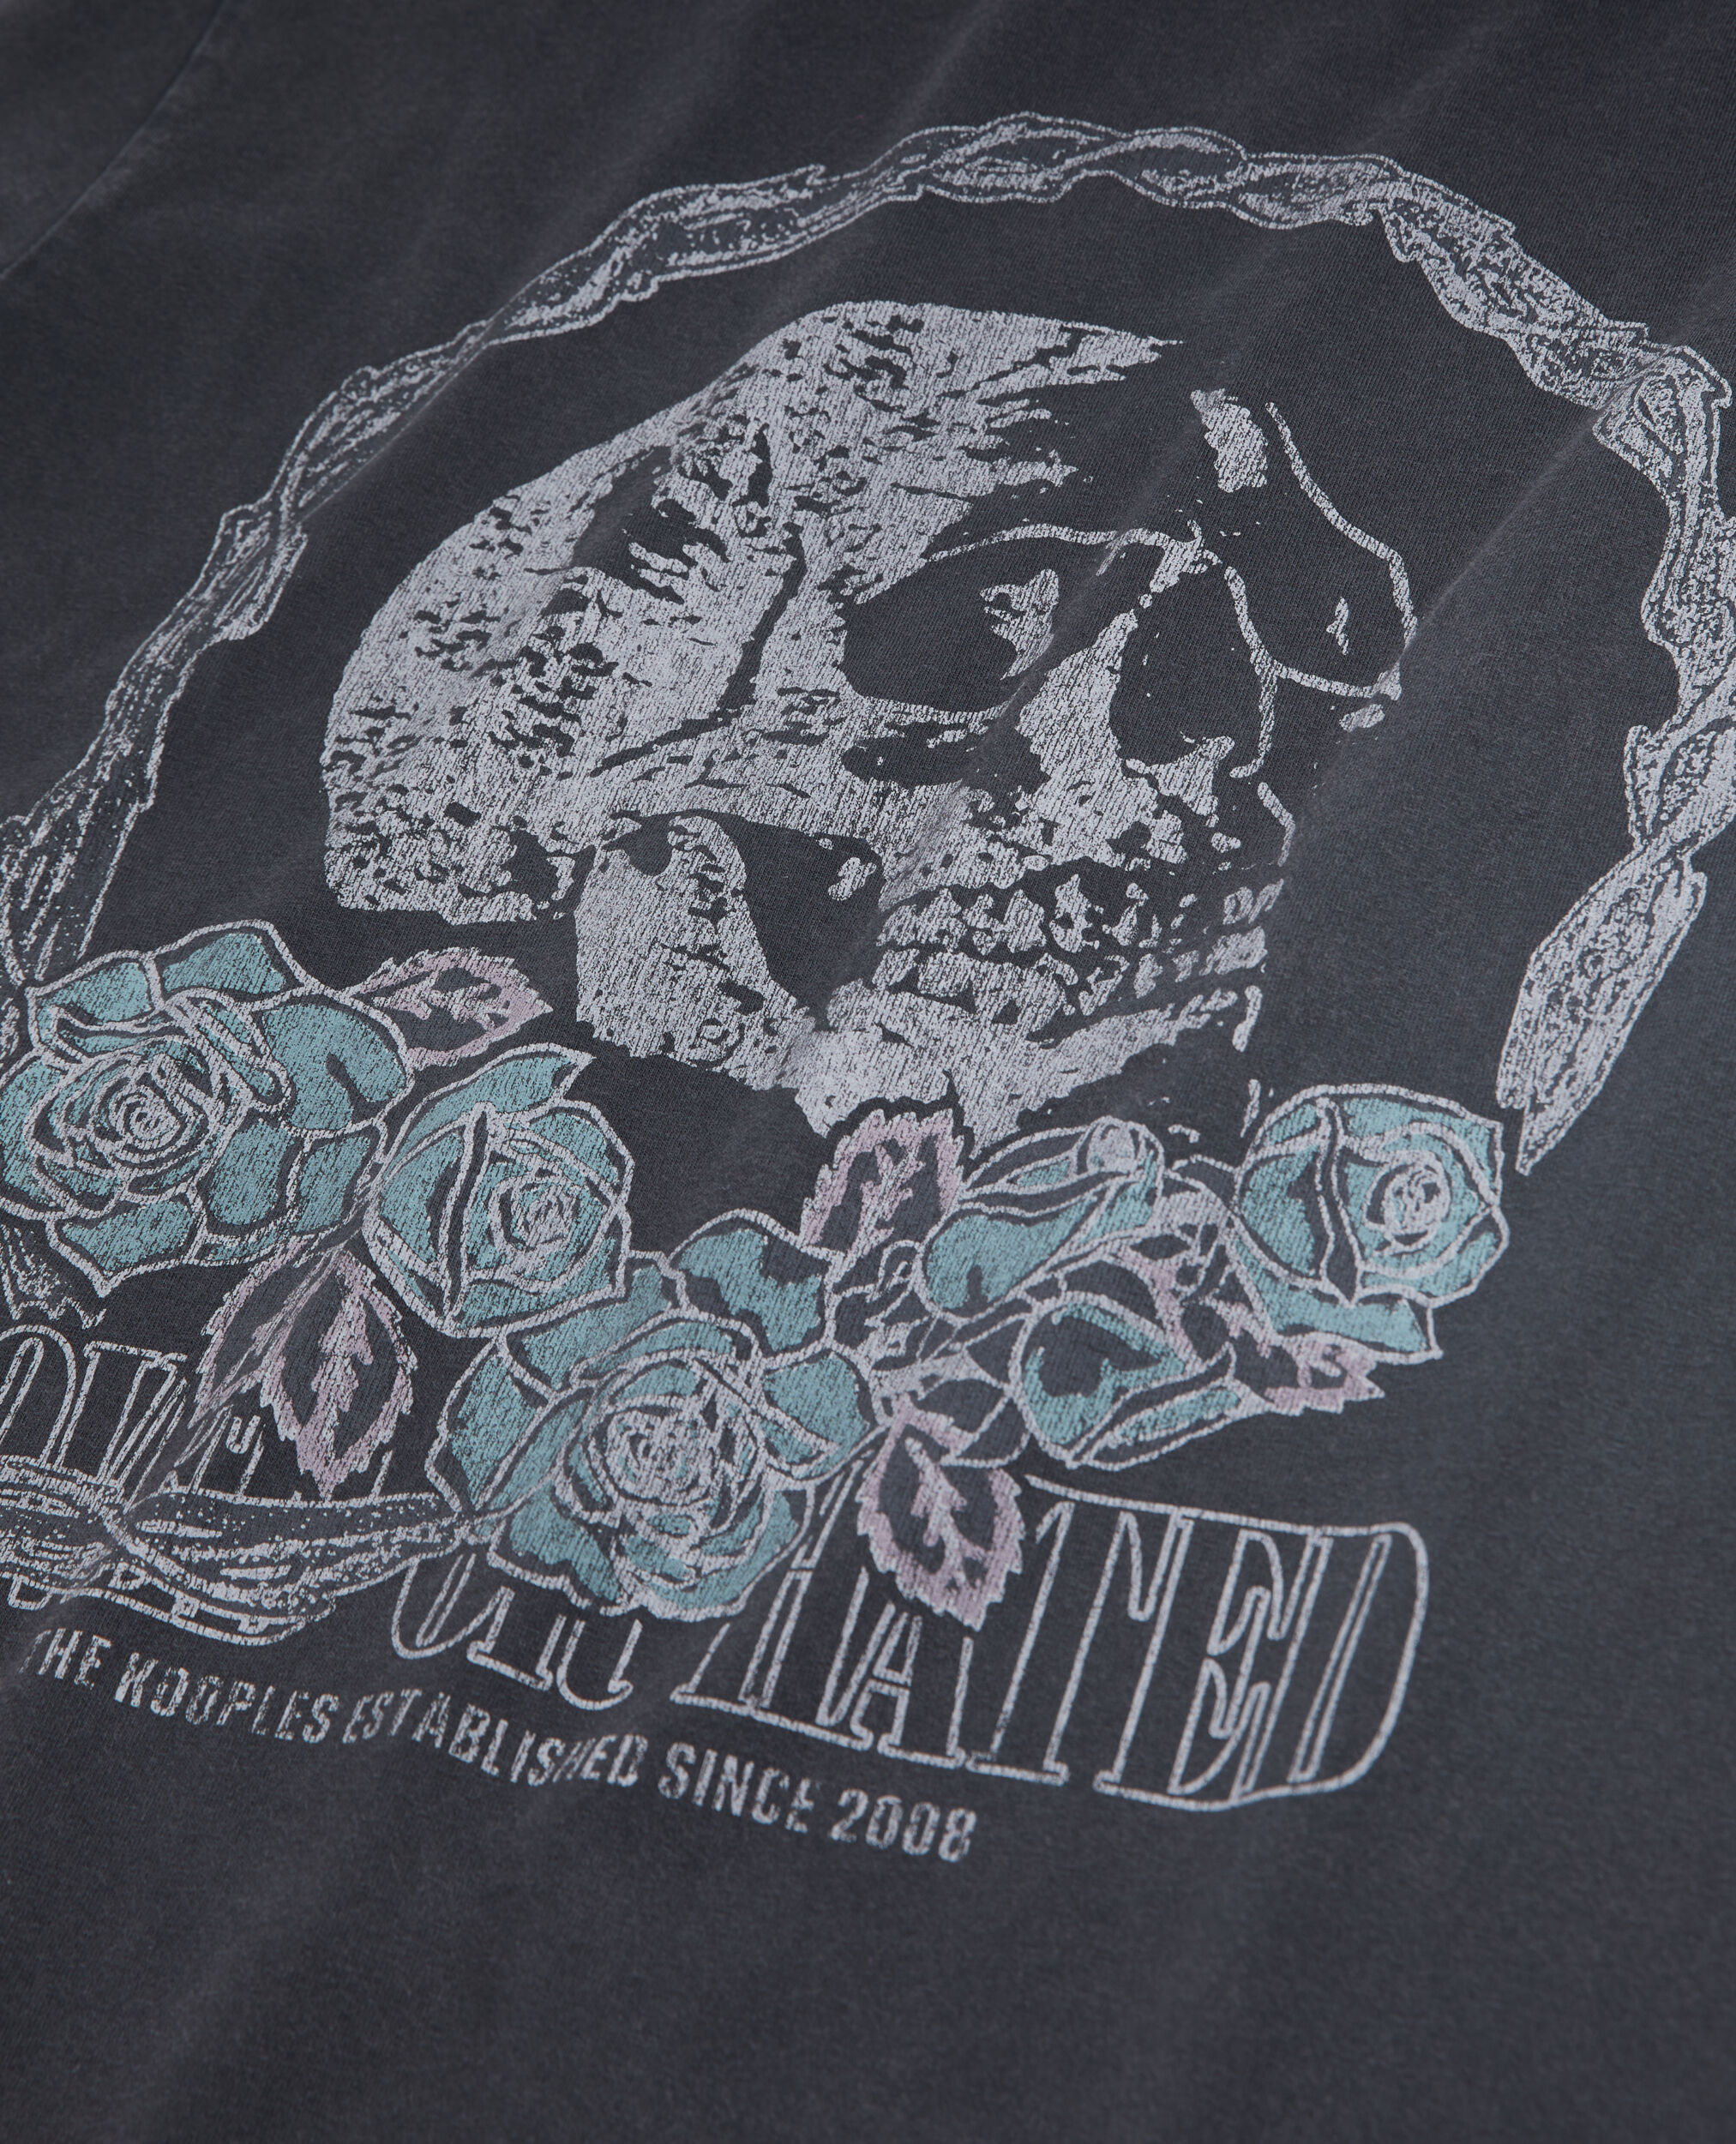 T-shirt noir avec sérigraphie Vintage skull, BLACK WASHED, hi-res image number null